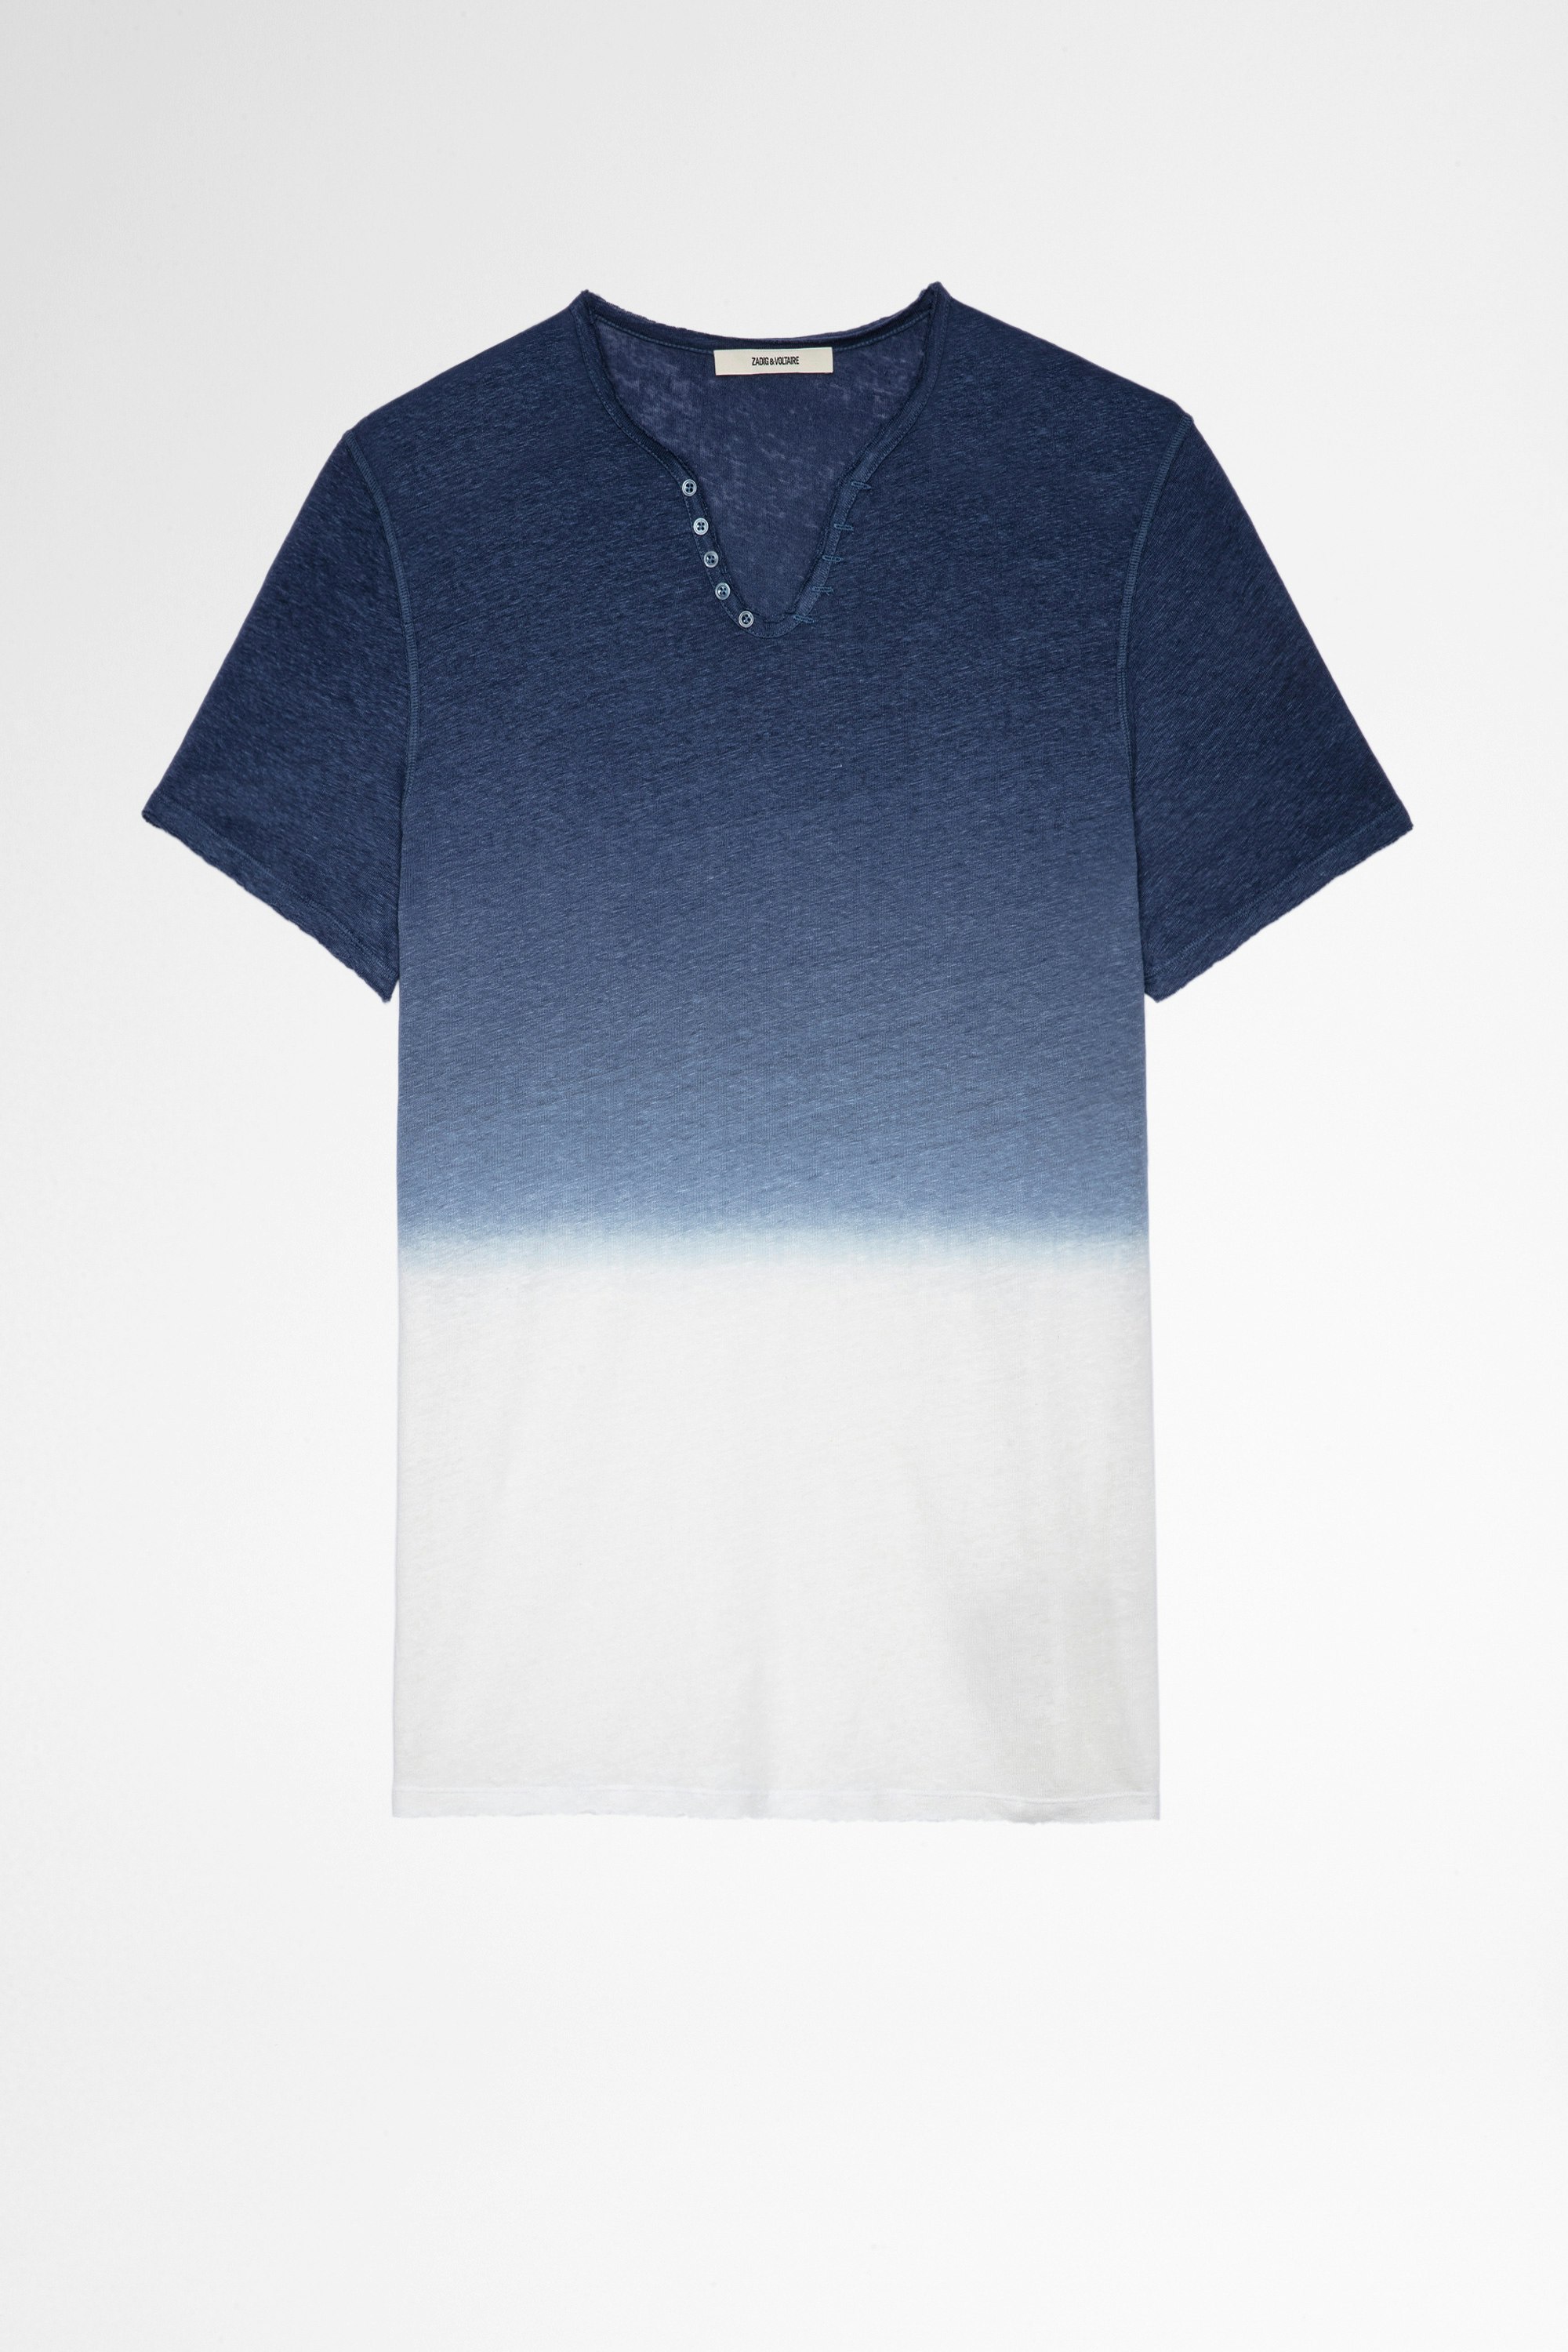 Monastir T-shirt Leinen Men’s blue linen Henley T-shirt